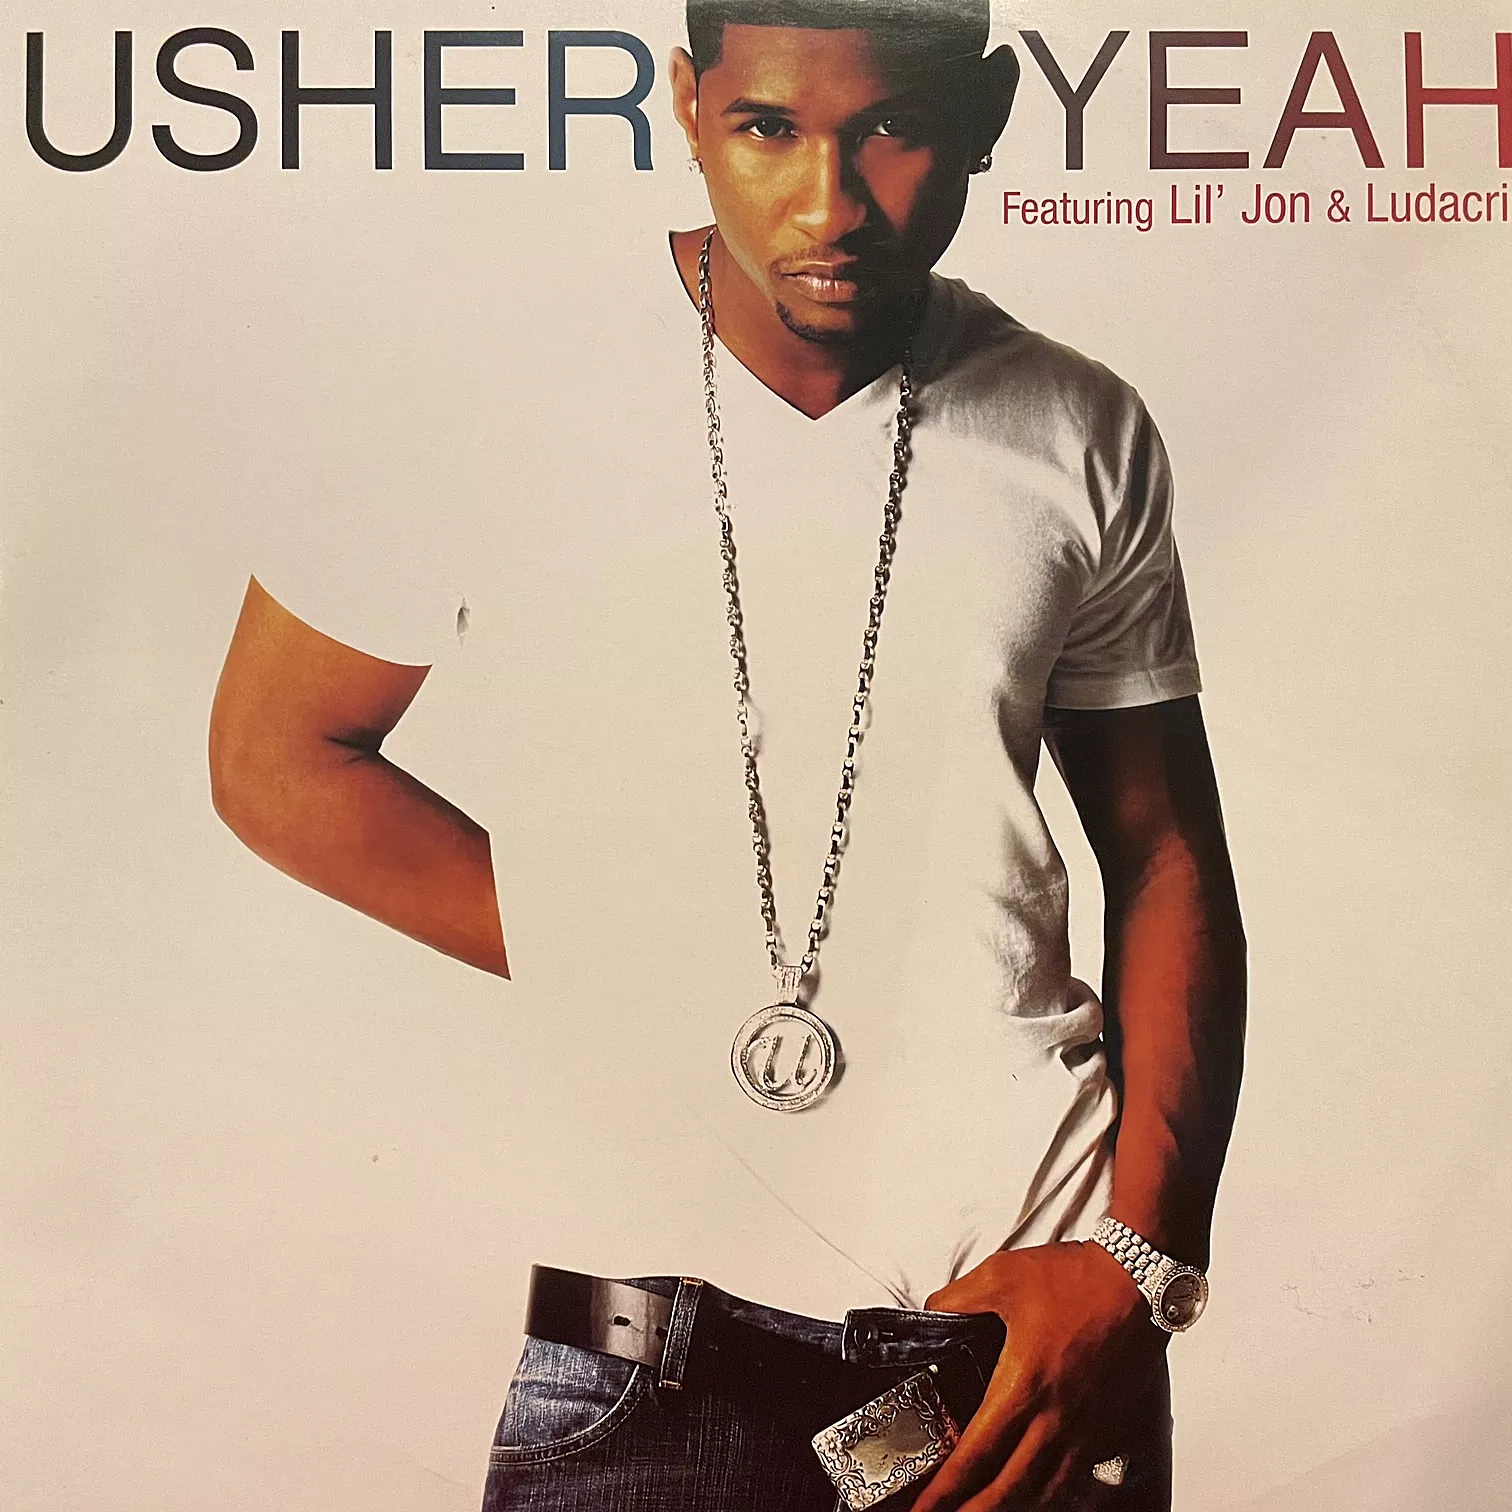 USHER / YEAH